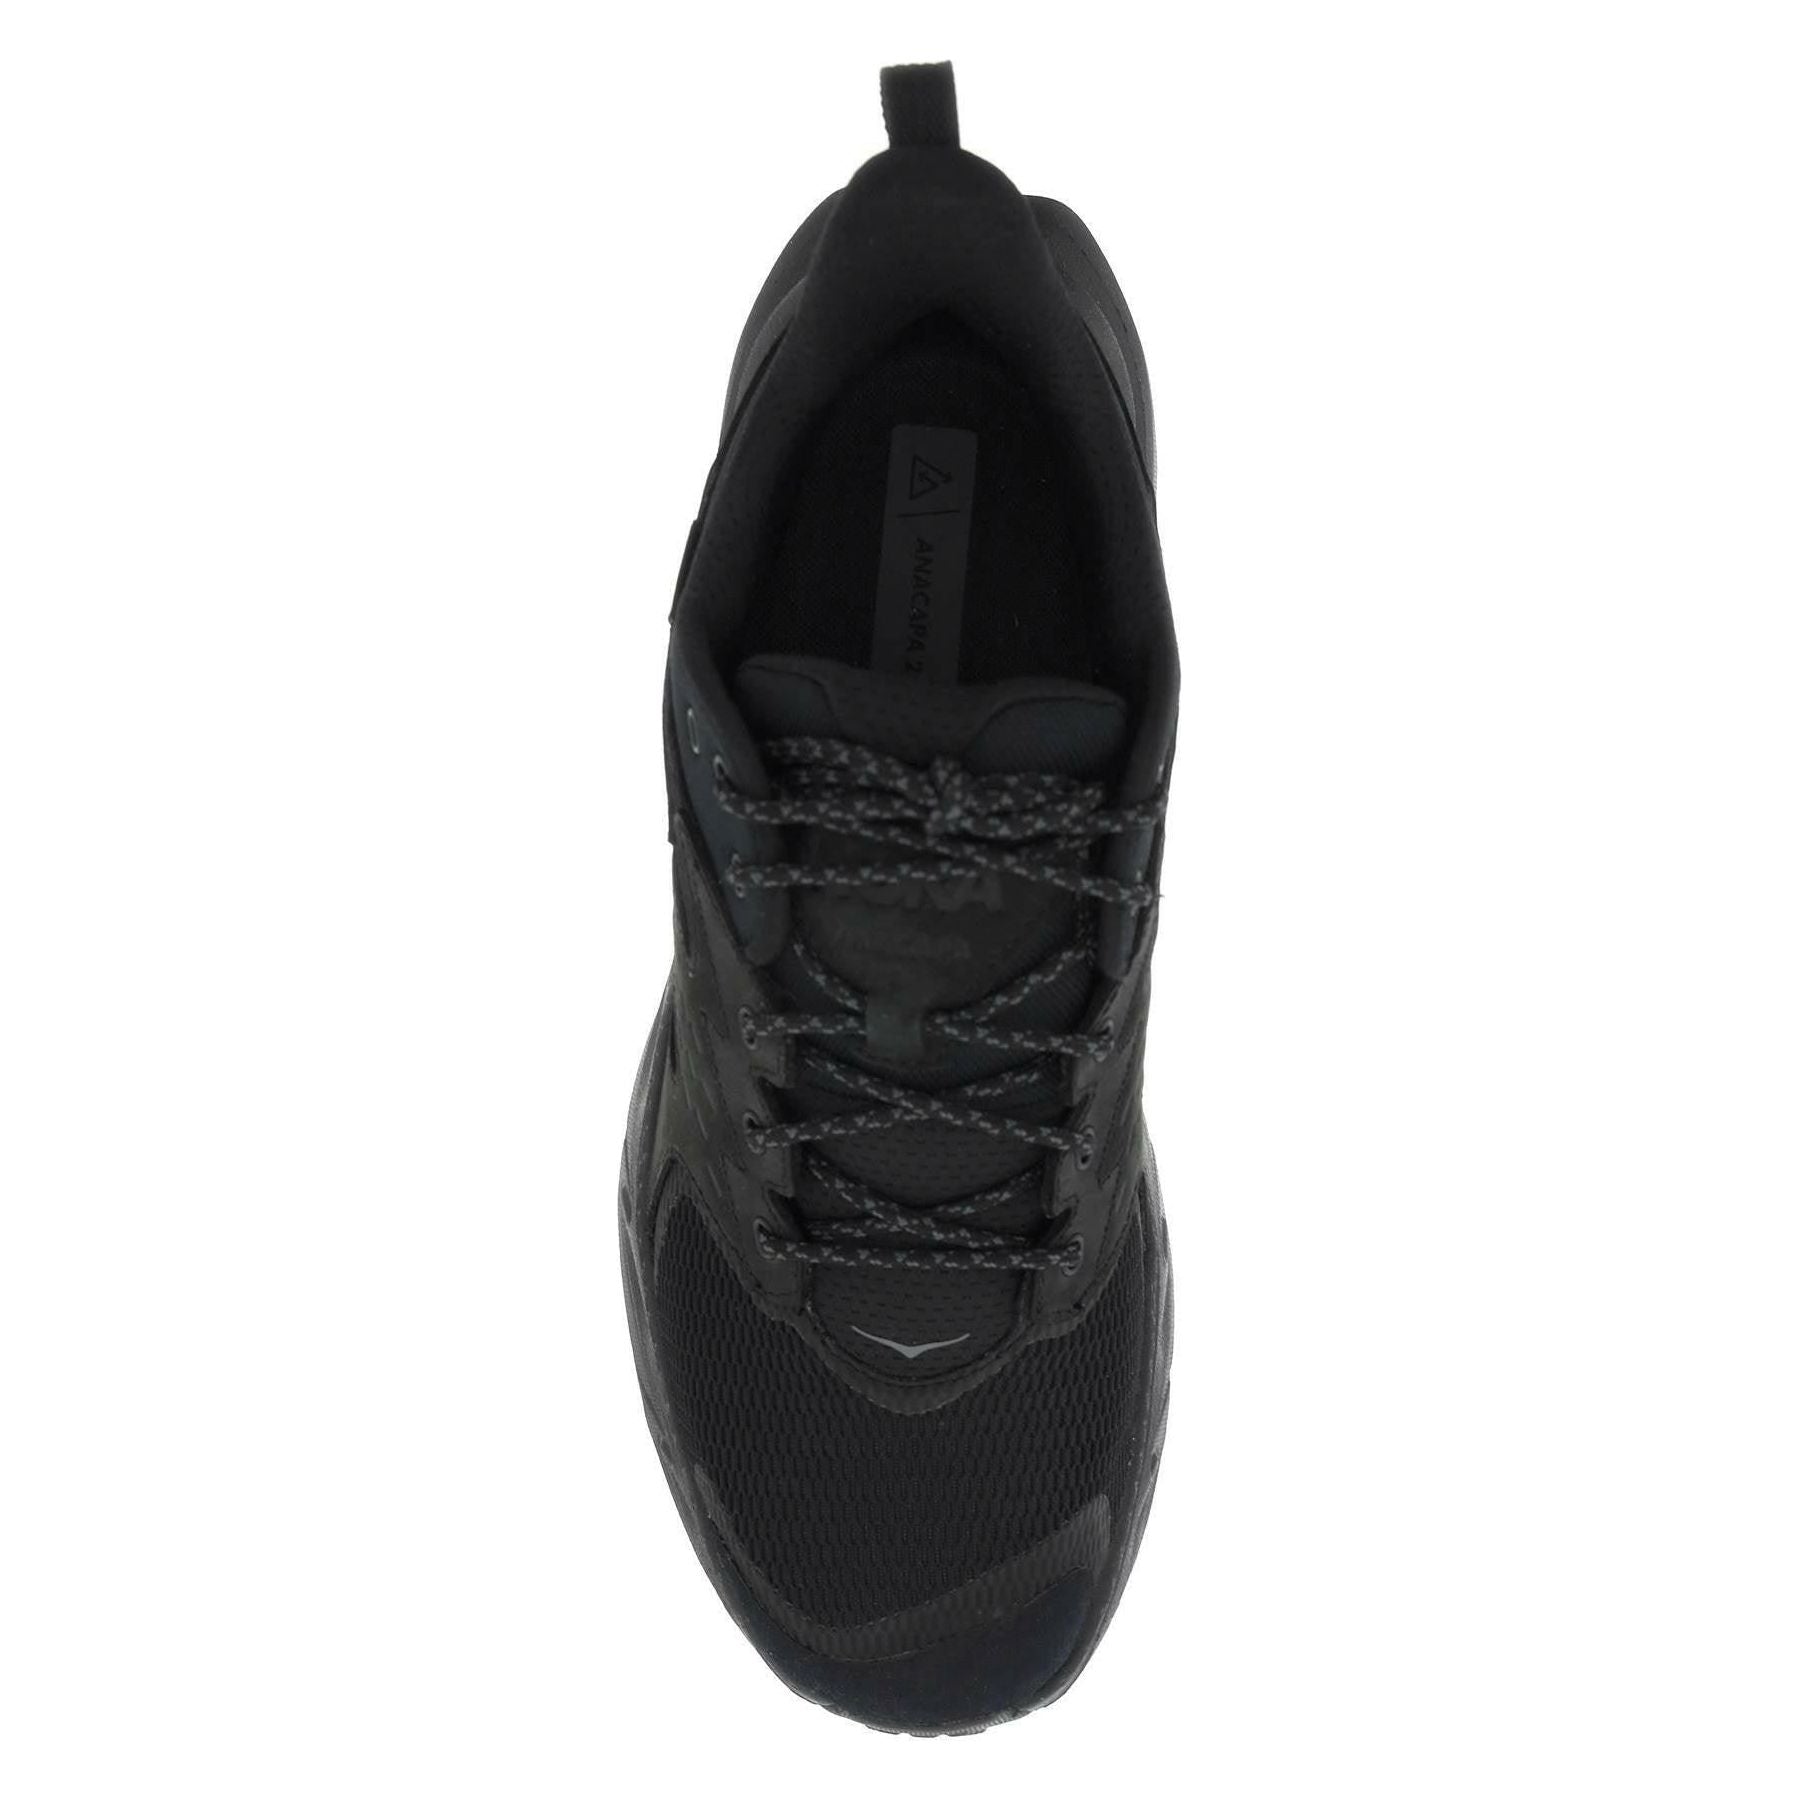 Black Anacapa 2 Low GORE-TEx Sneakers HOKA JOHN JULIA.